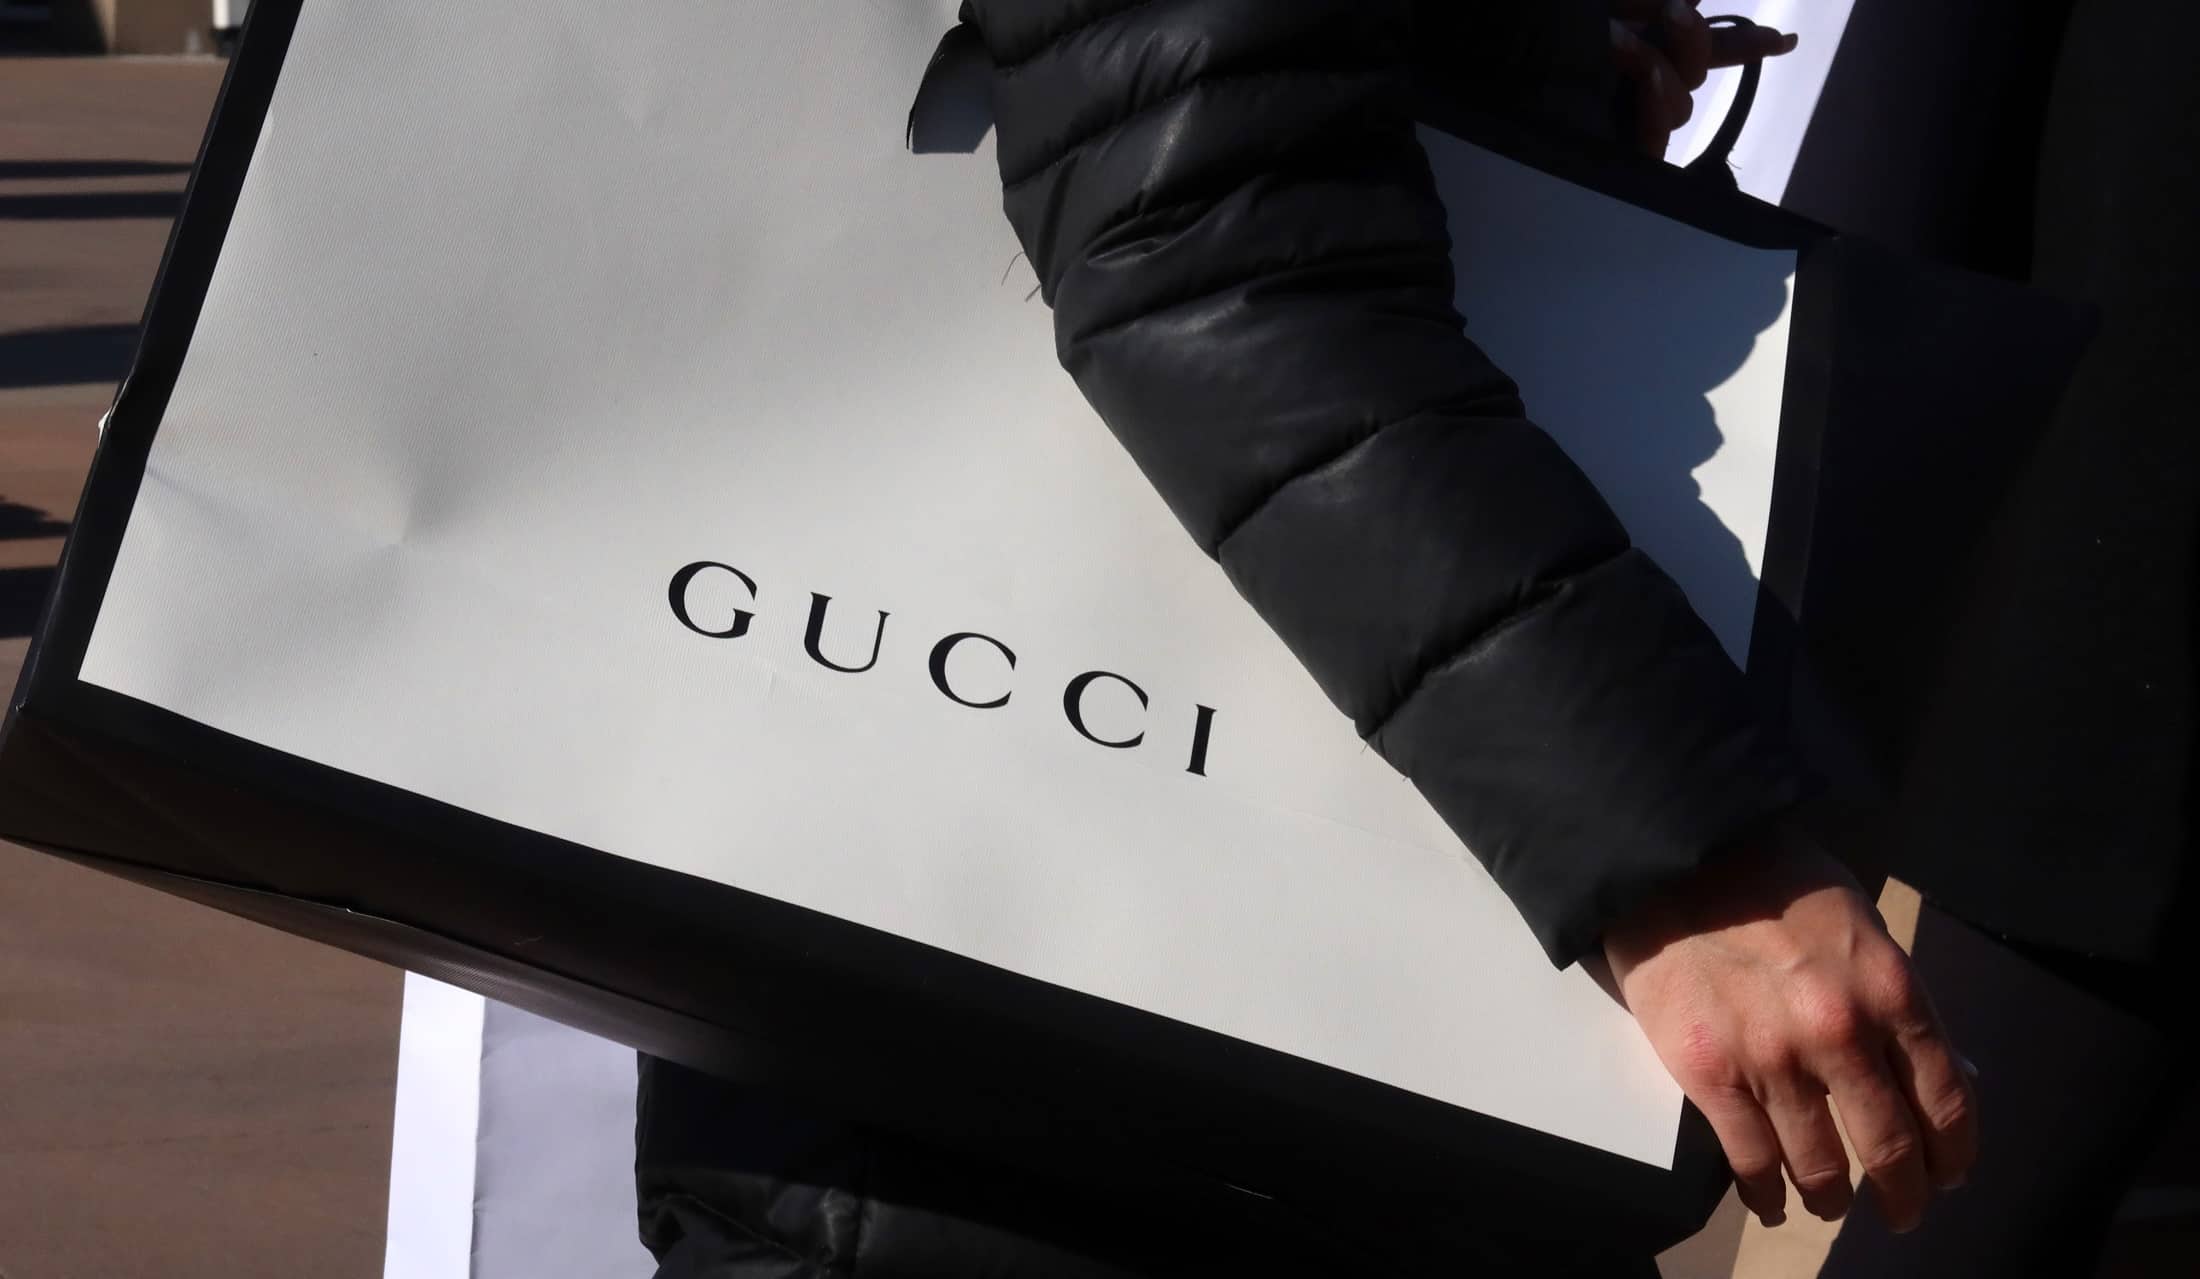 Gucci sprzedaje sneakersy za niecałe 50 złotych. Podczas zakupów czeka jednak na Ciebie mały haczyk…